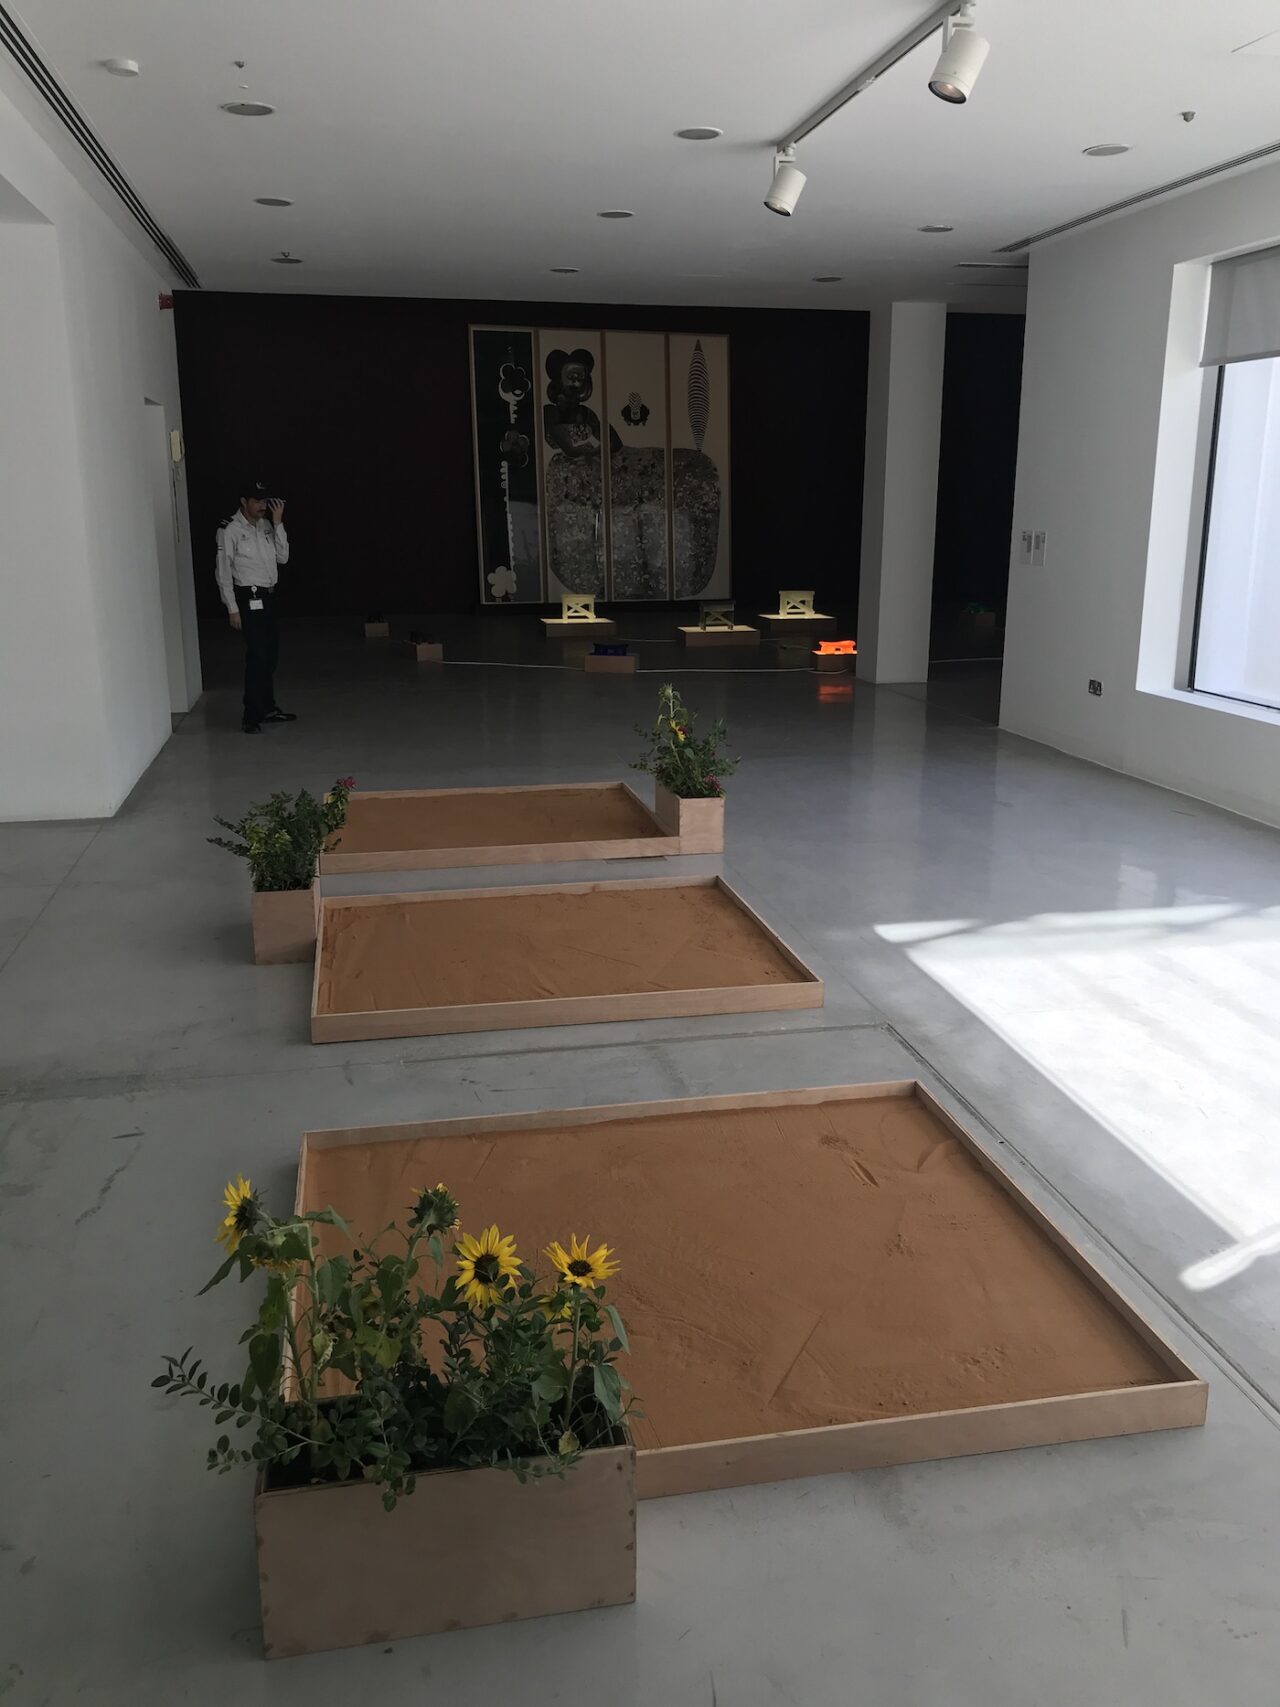 Maria Magdalena Campos-Pons, Murmullo Familiar, 2021-2023. Installation view at Sharjah Biennial 15. Photo: C&.